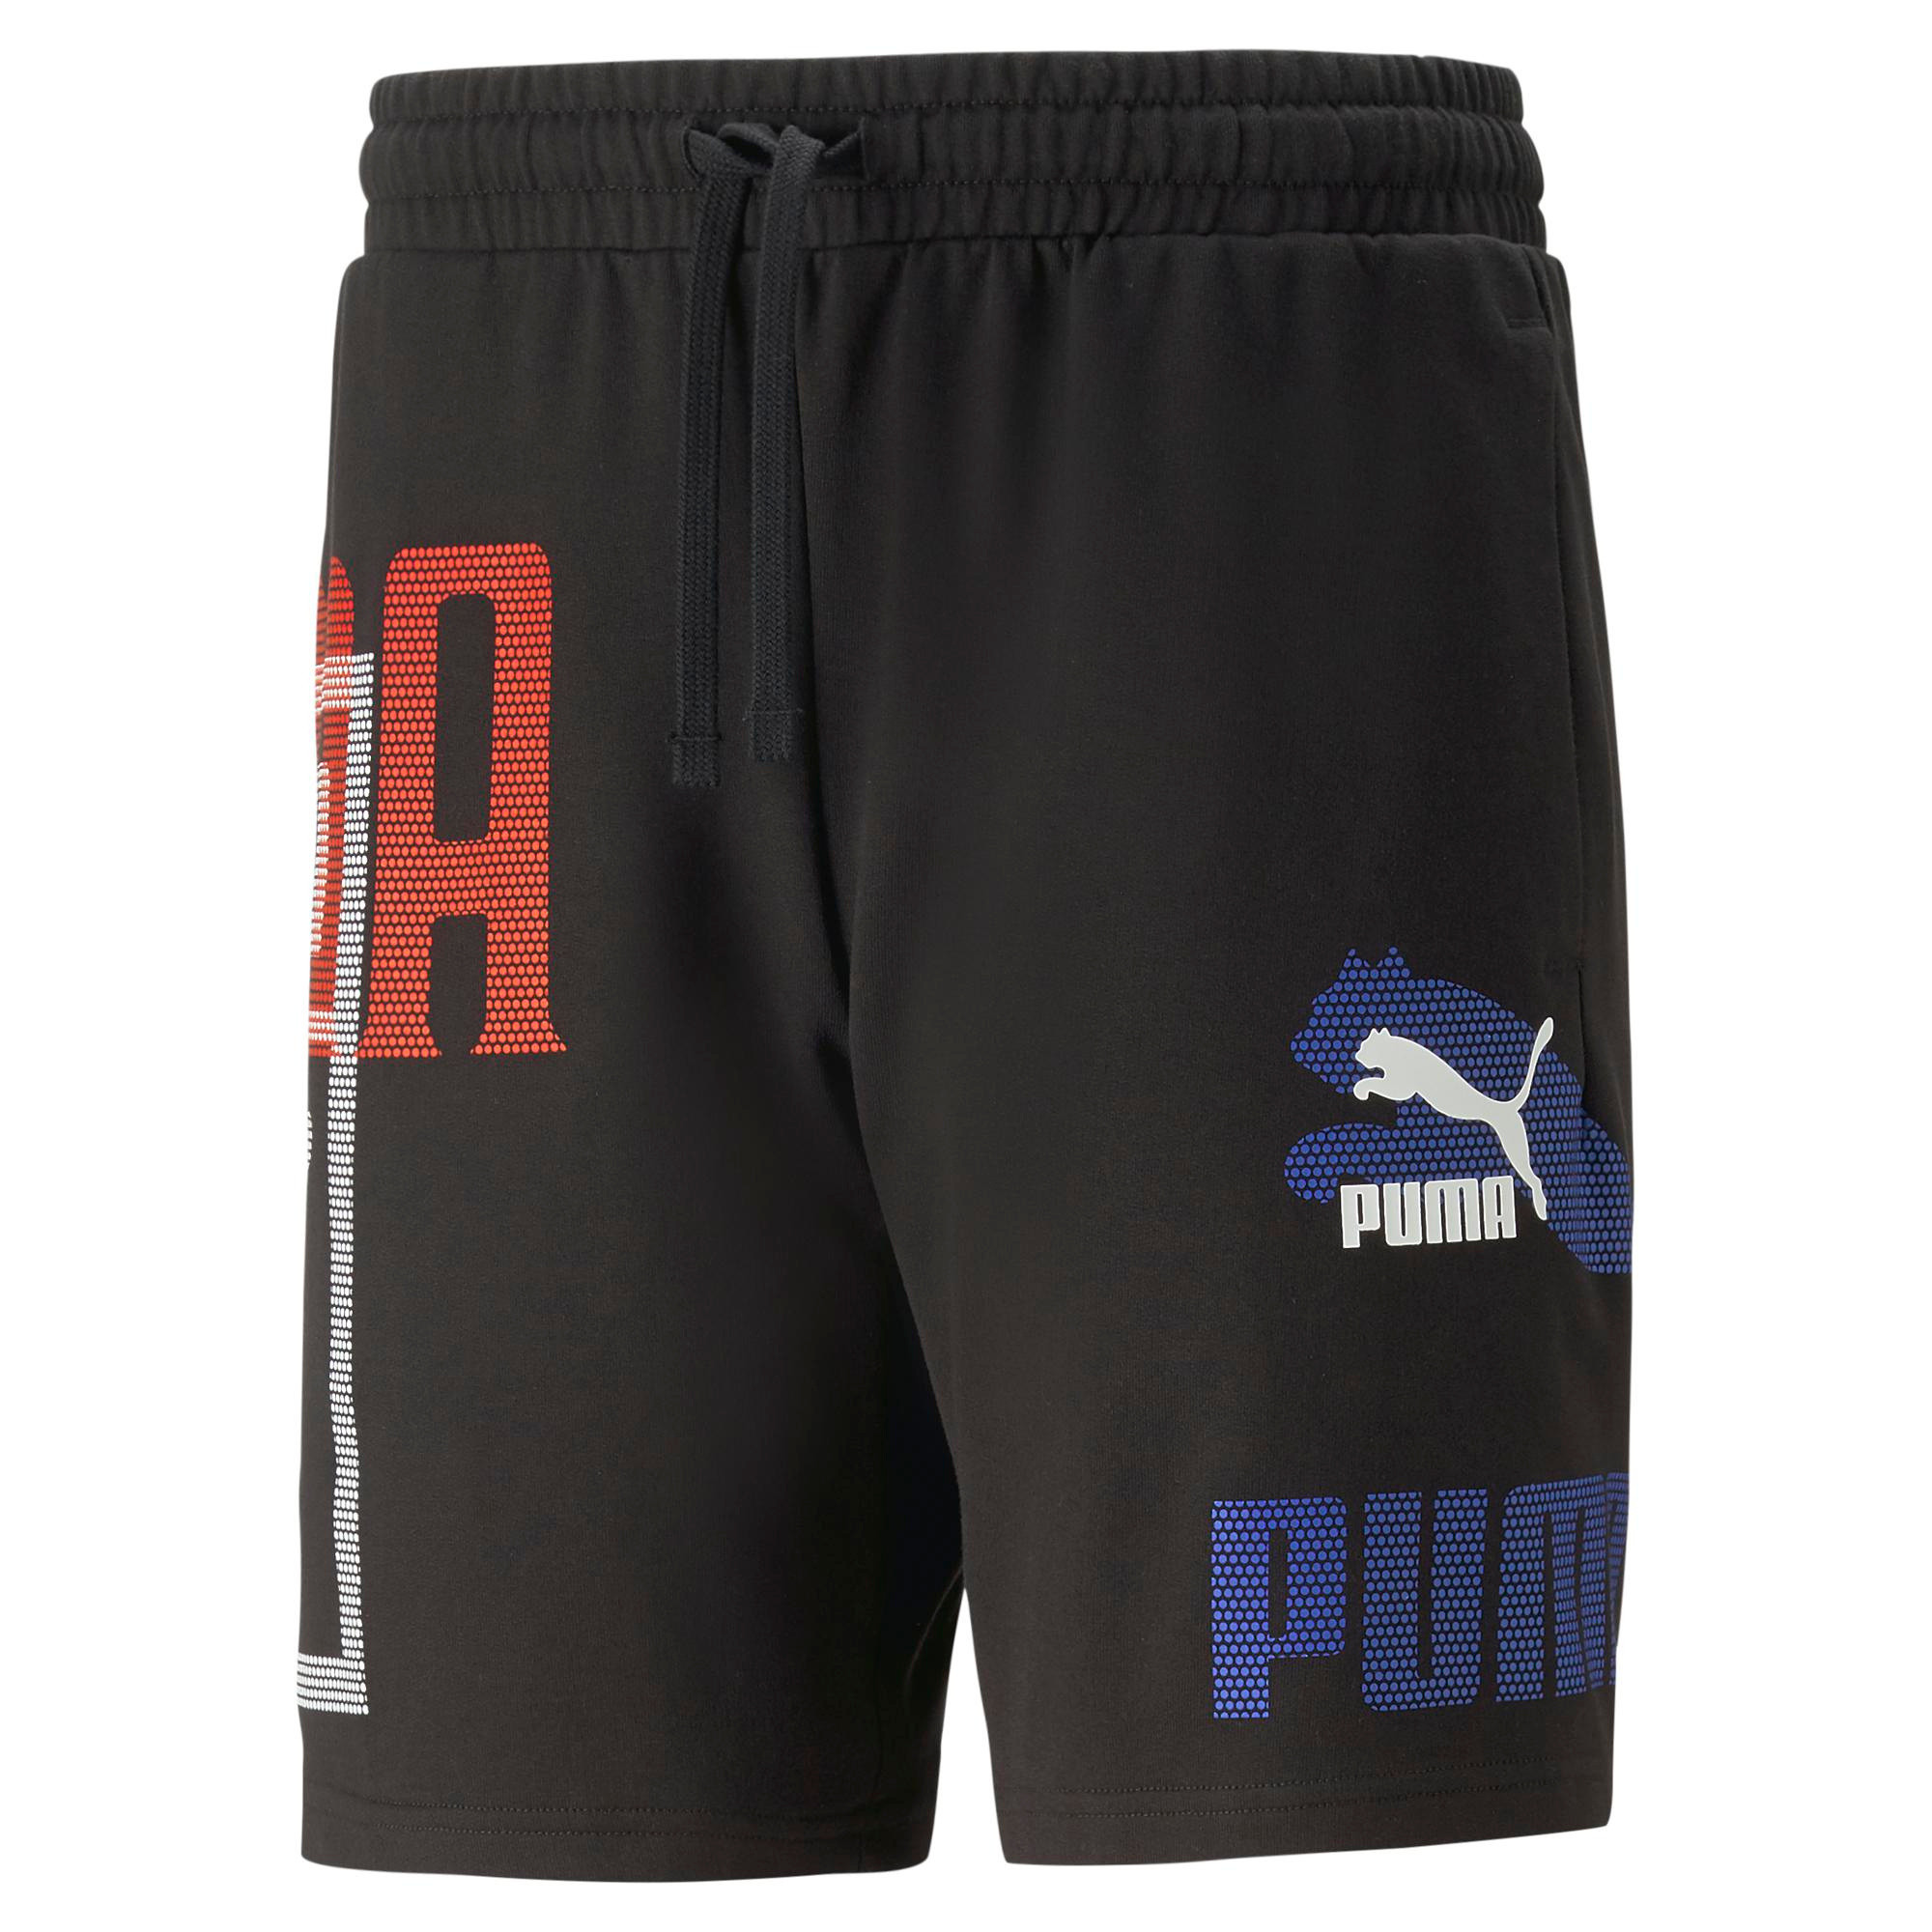 Puma - Shorts with logo, Black, large image number 0